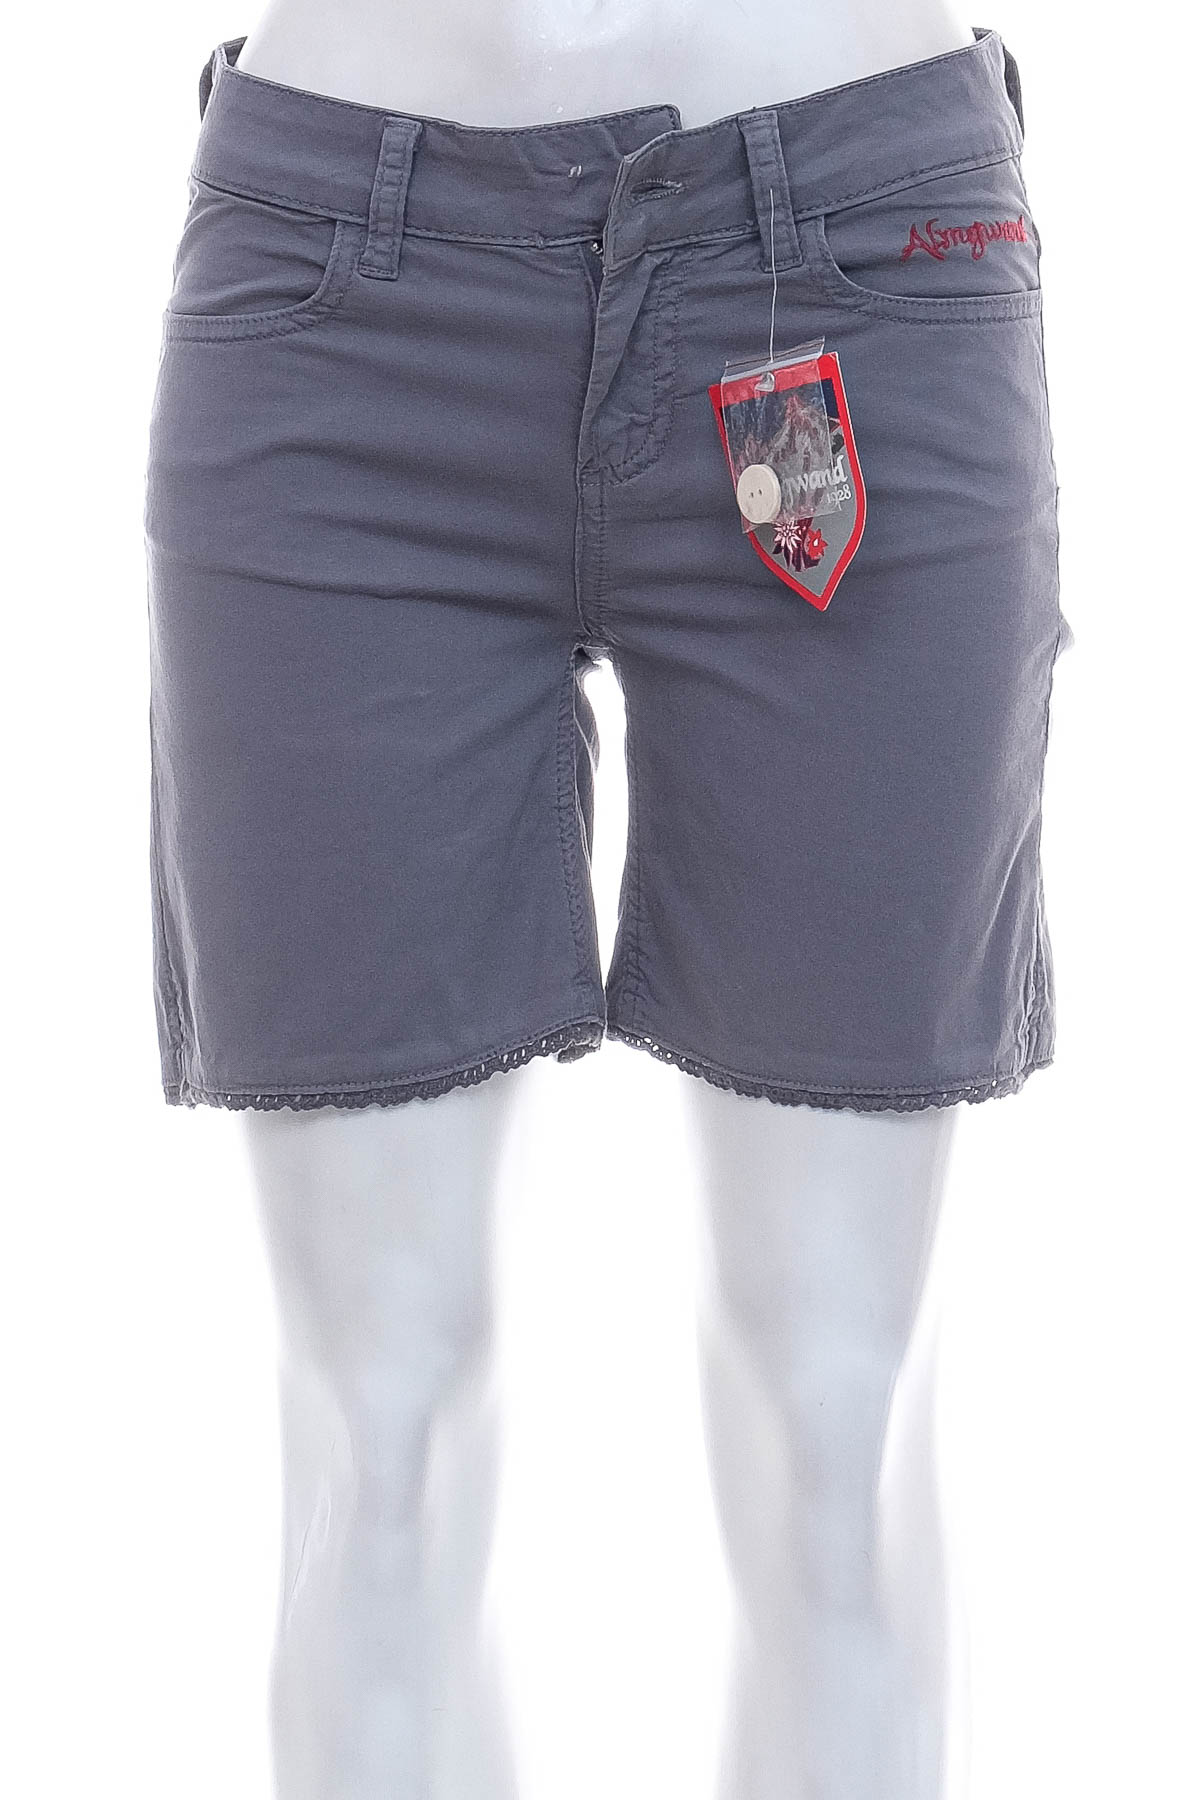 Female shorts - Almgwand - 0